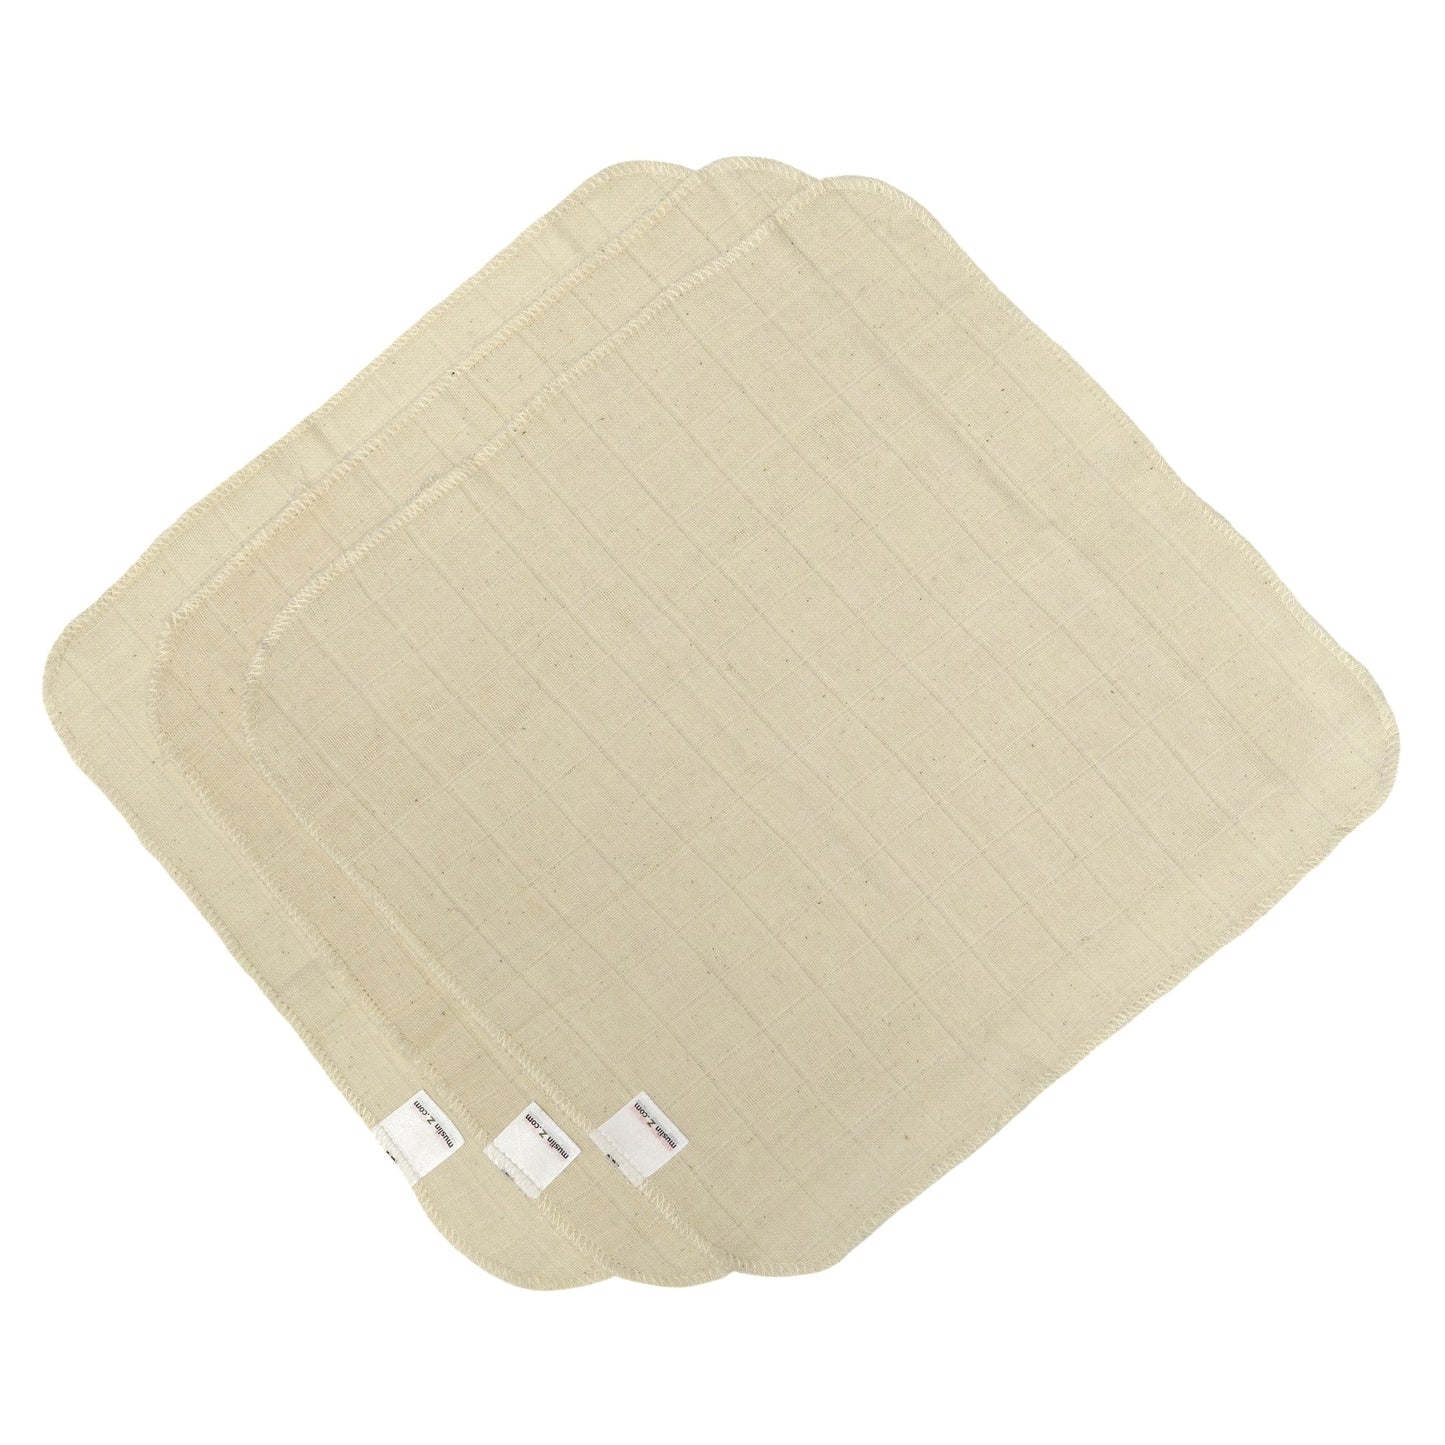 MuslinZ 30cm Face Cloths/Handkerchiefs/Wipes